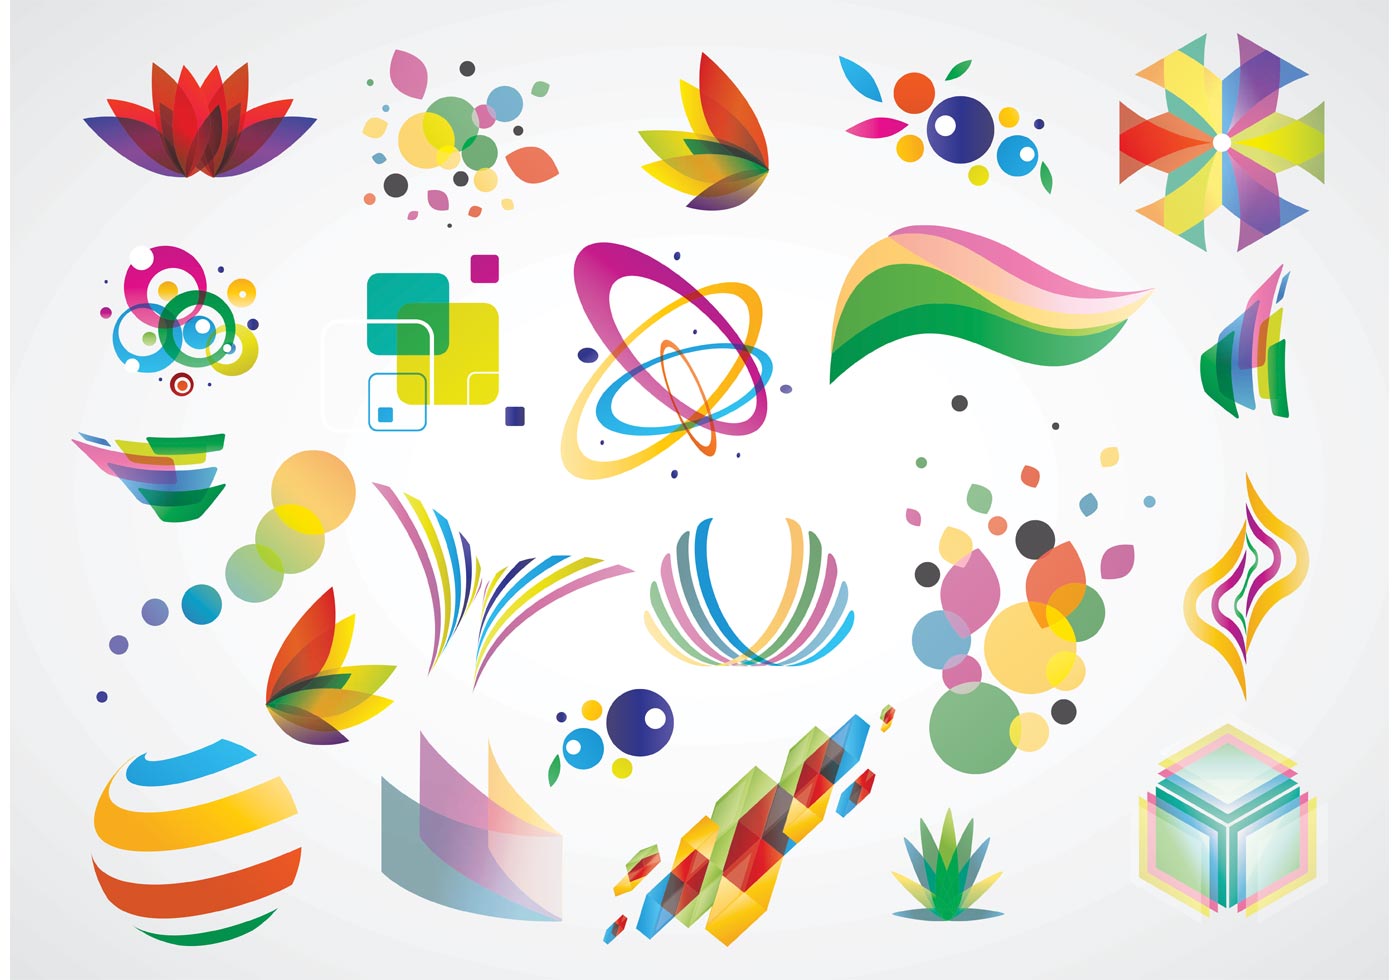 Logo Design Elements - Download Free Vectors, Clipart ...